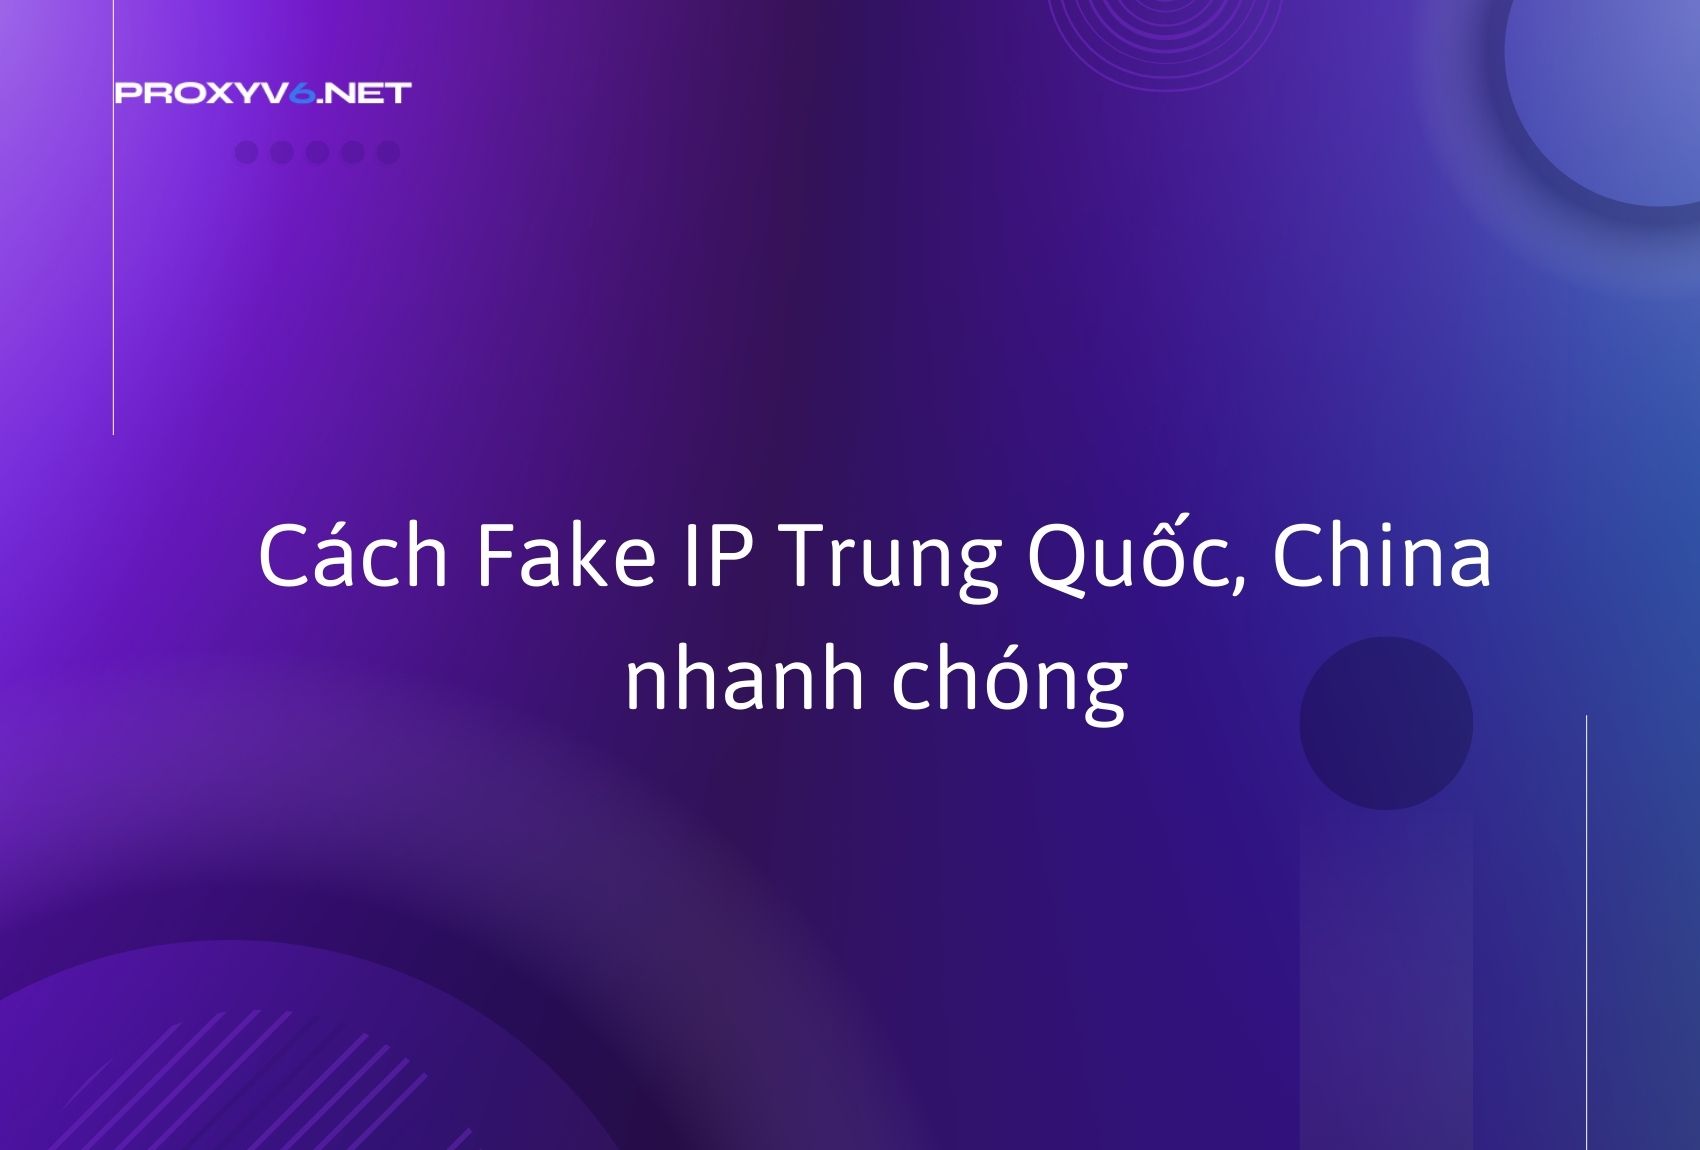 Cách Fake IP Trung Quốc, China nhanh chóng